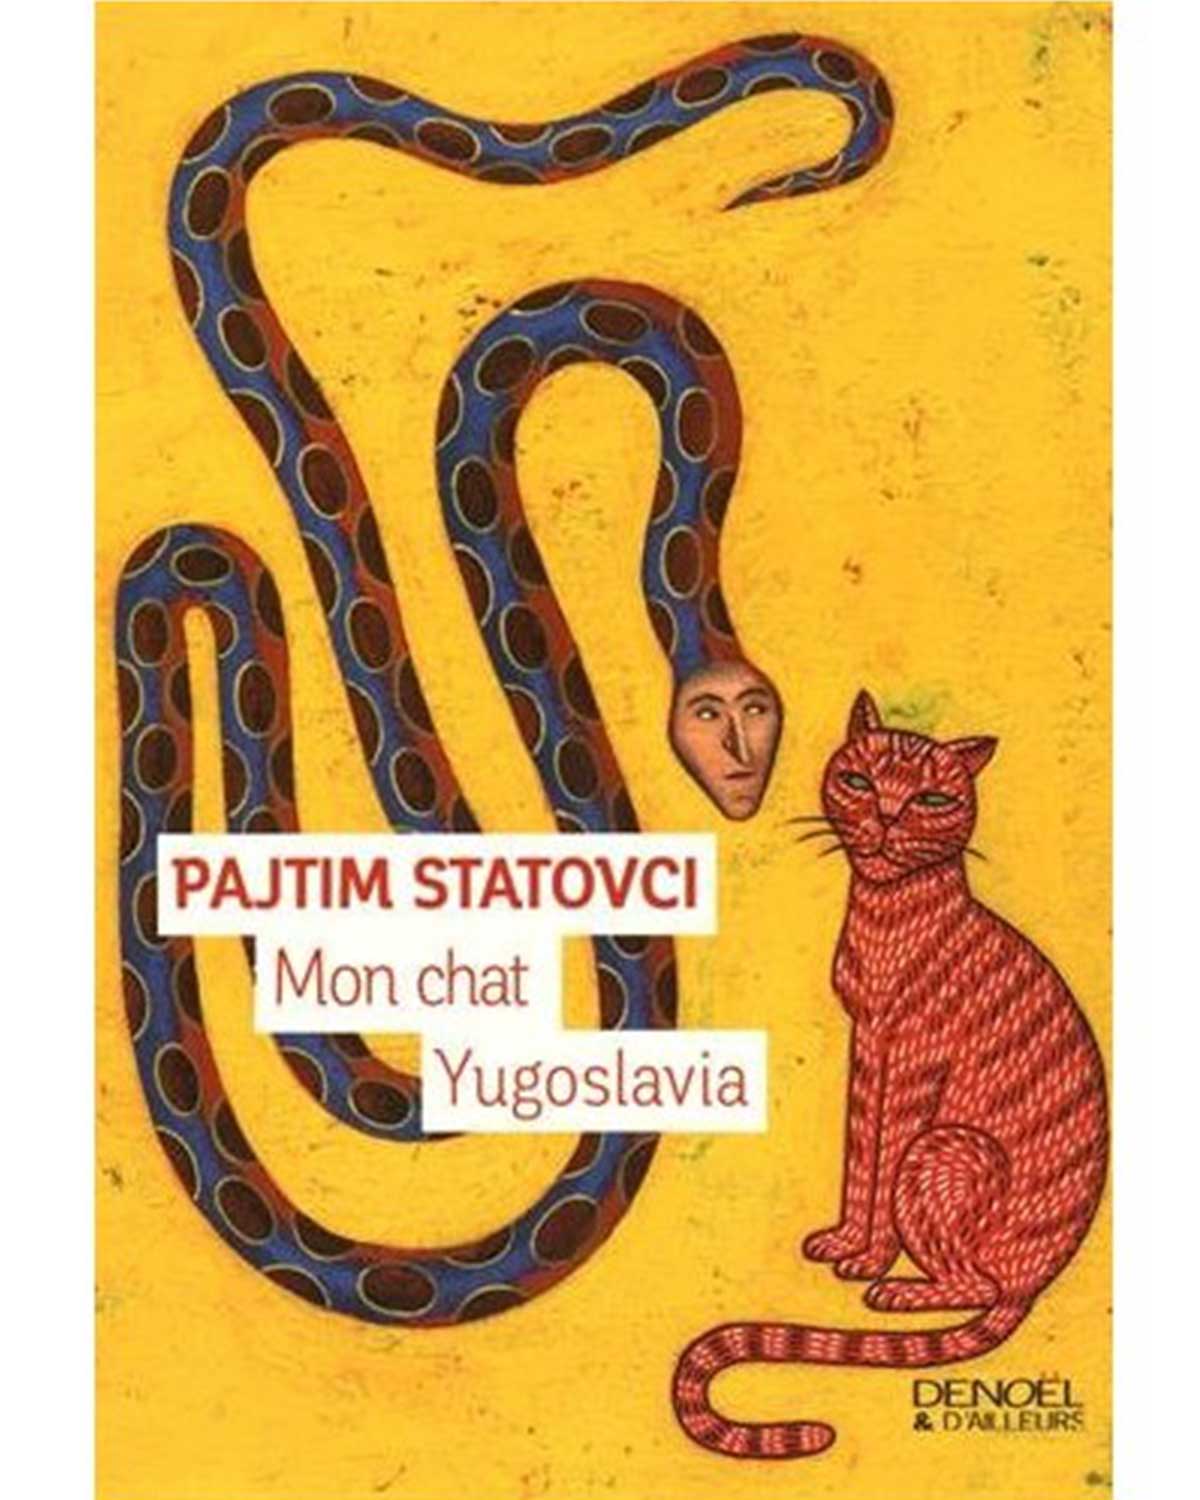 mon chat yugoslavia